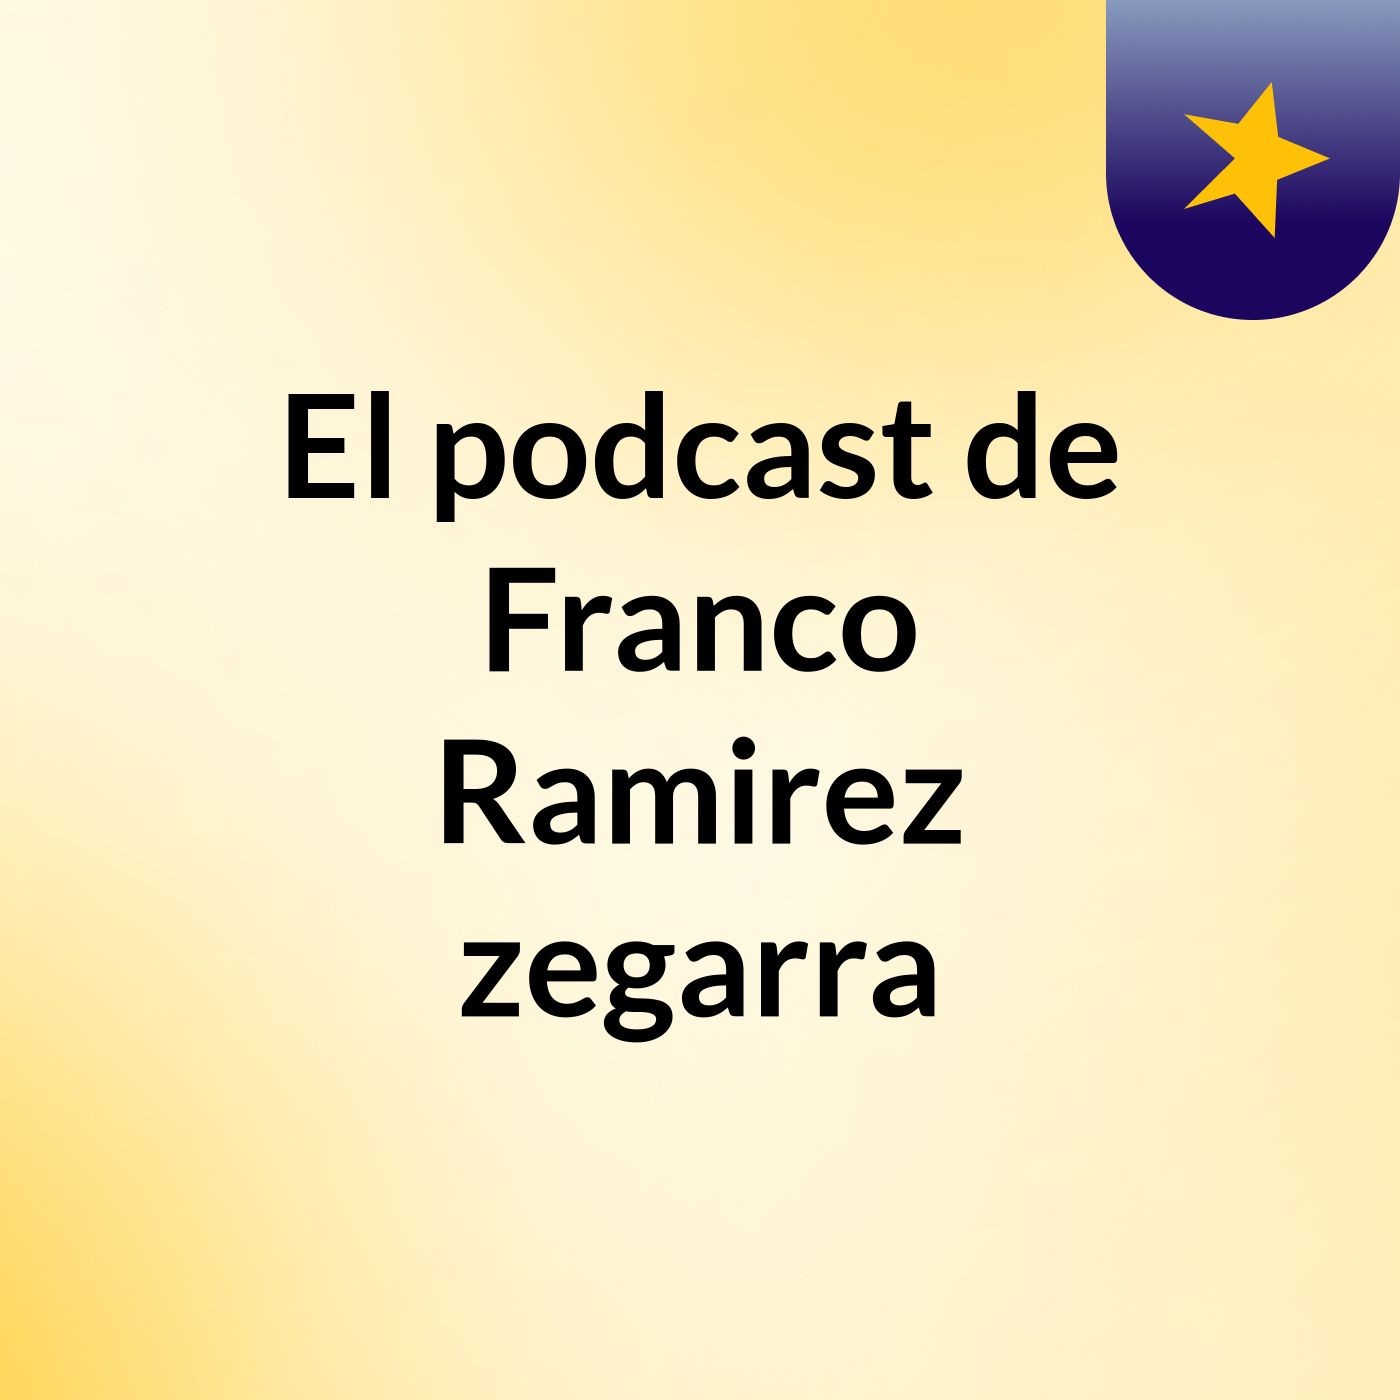 El podcast de Franco Ramirez zegarra